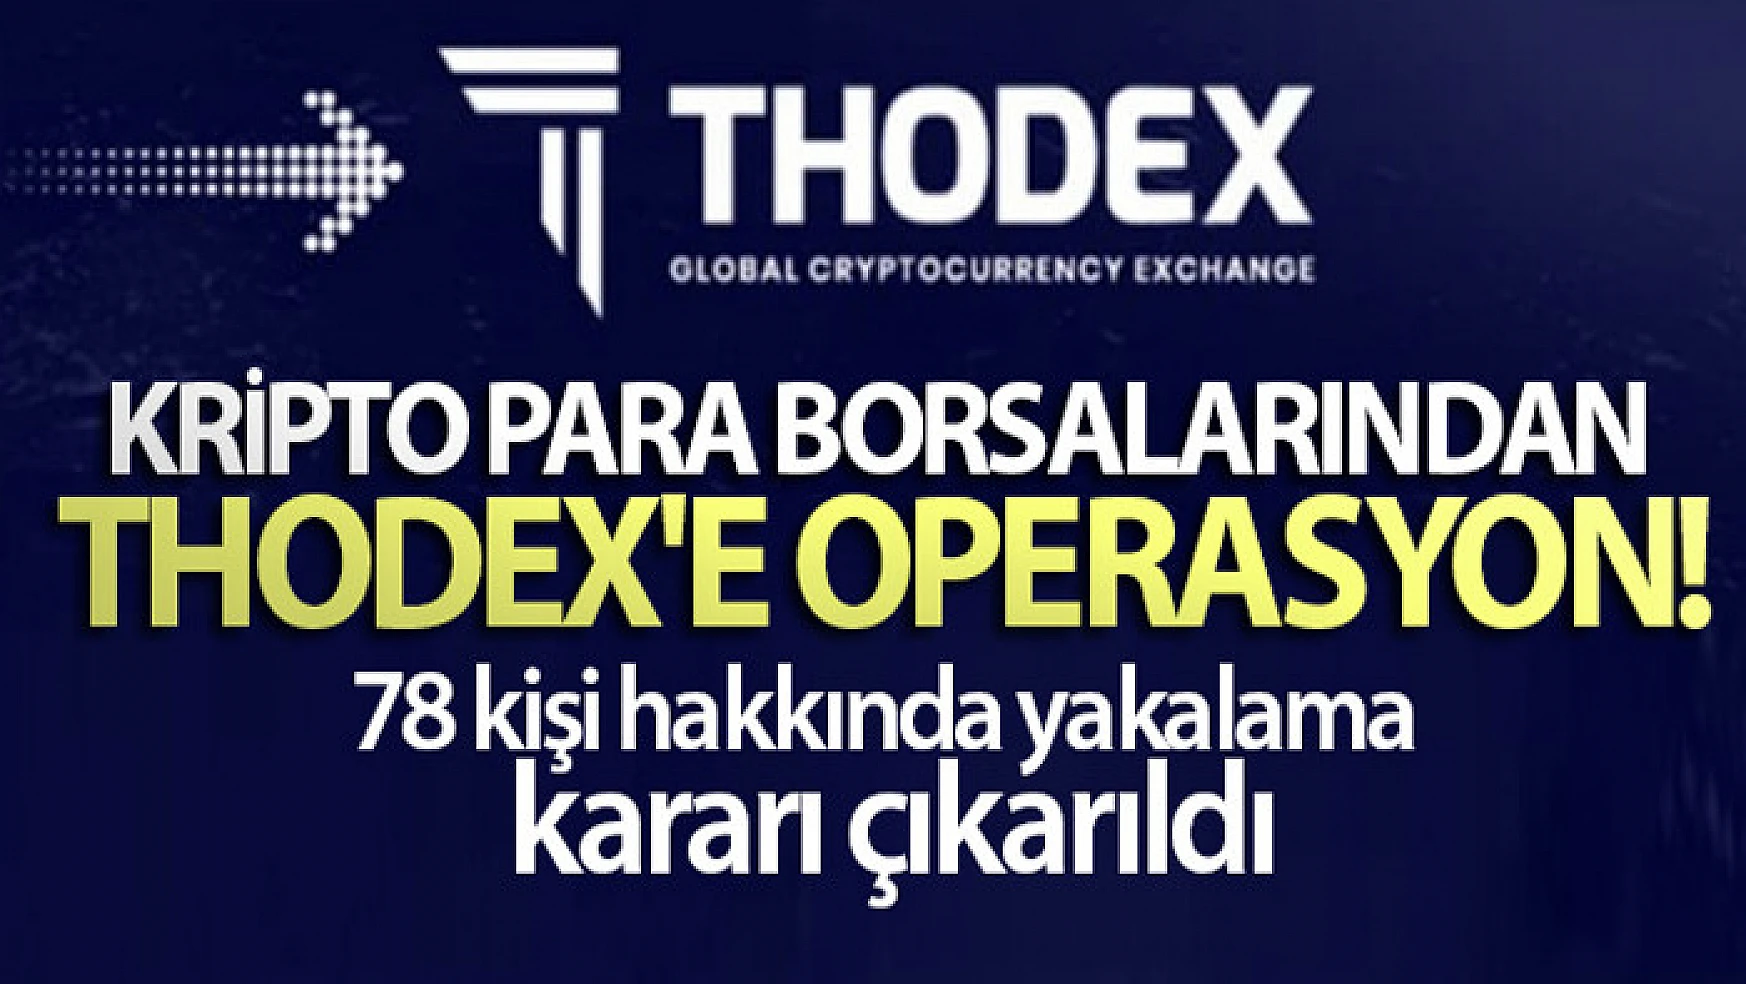 Kripto para borsalarından Thodex'e operasyon: 78 kişi hakkında yakalama kararı çıkarıldı